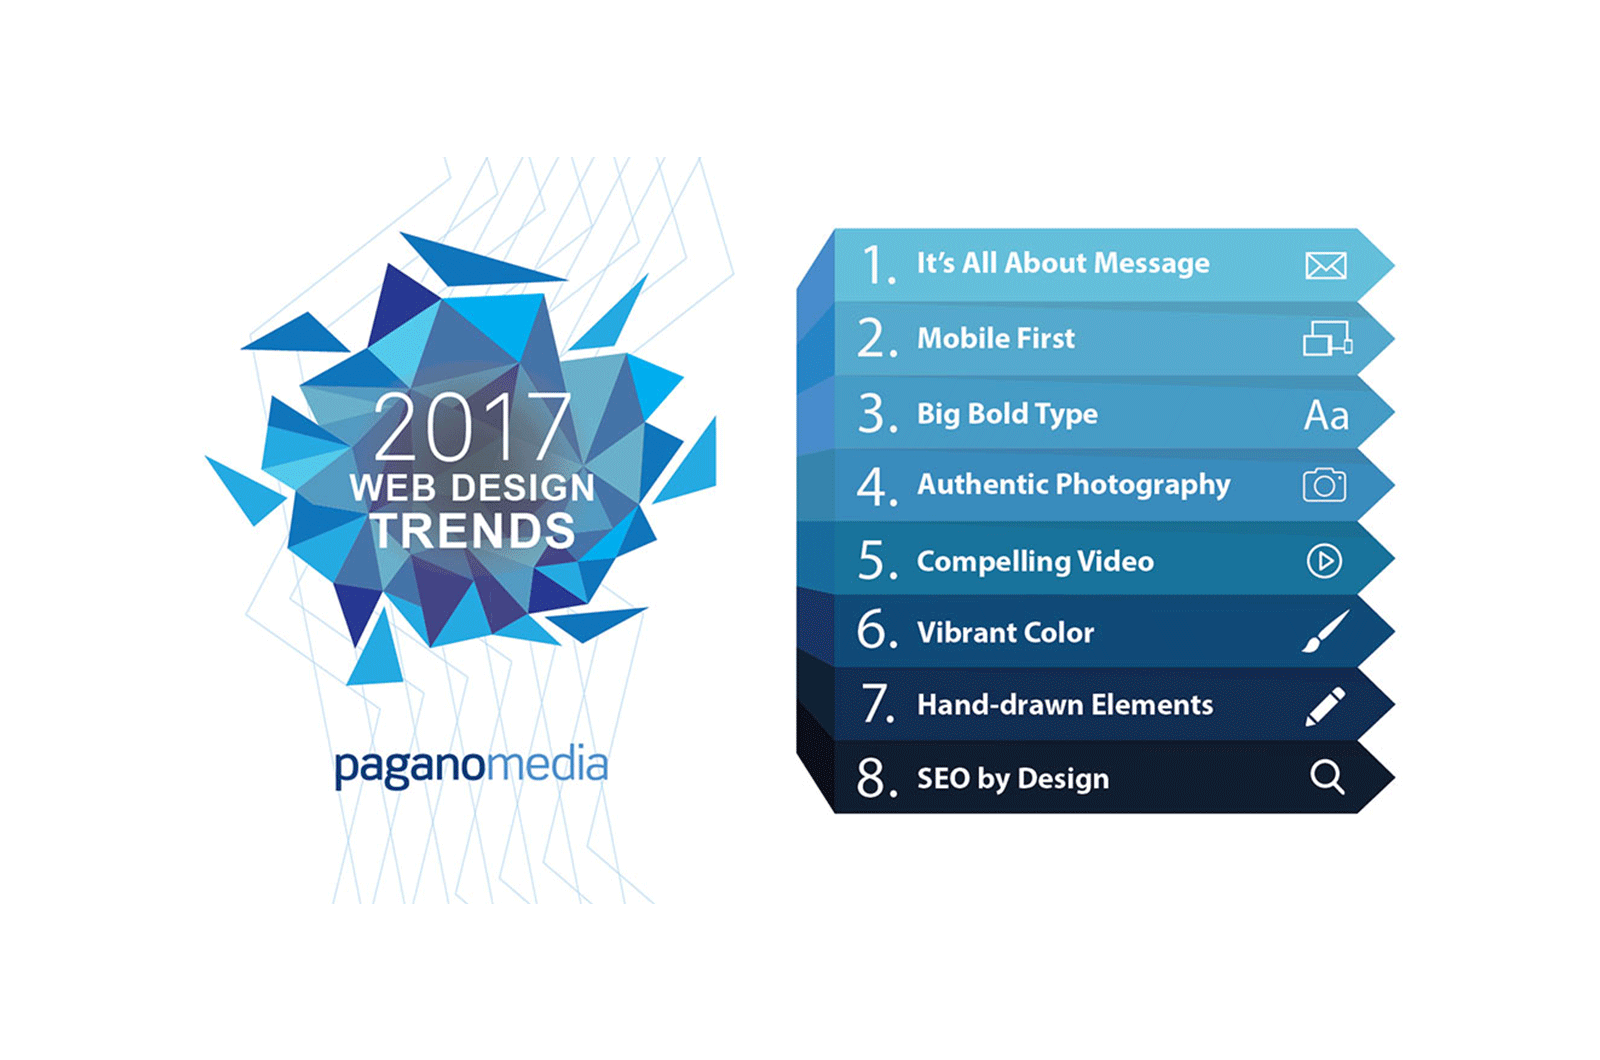 2017 Web Design Trends large